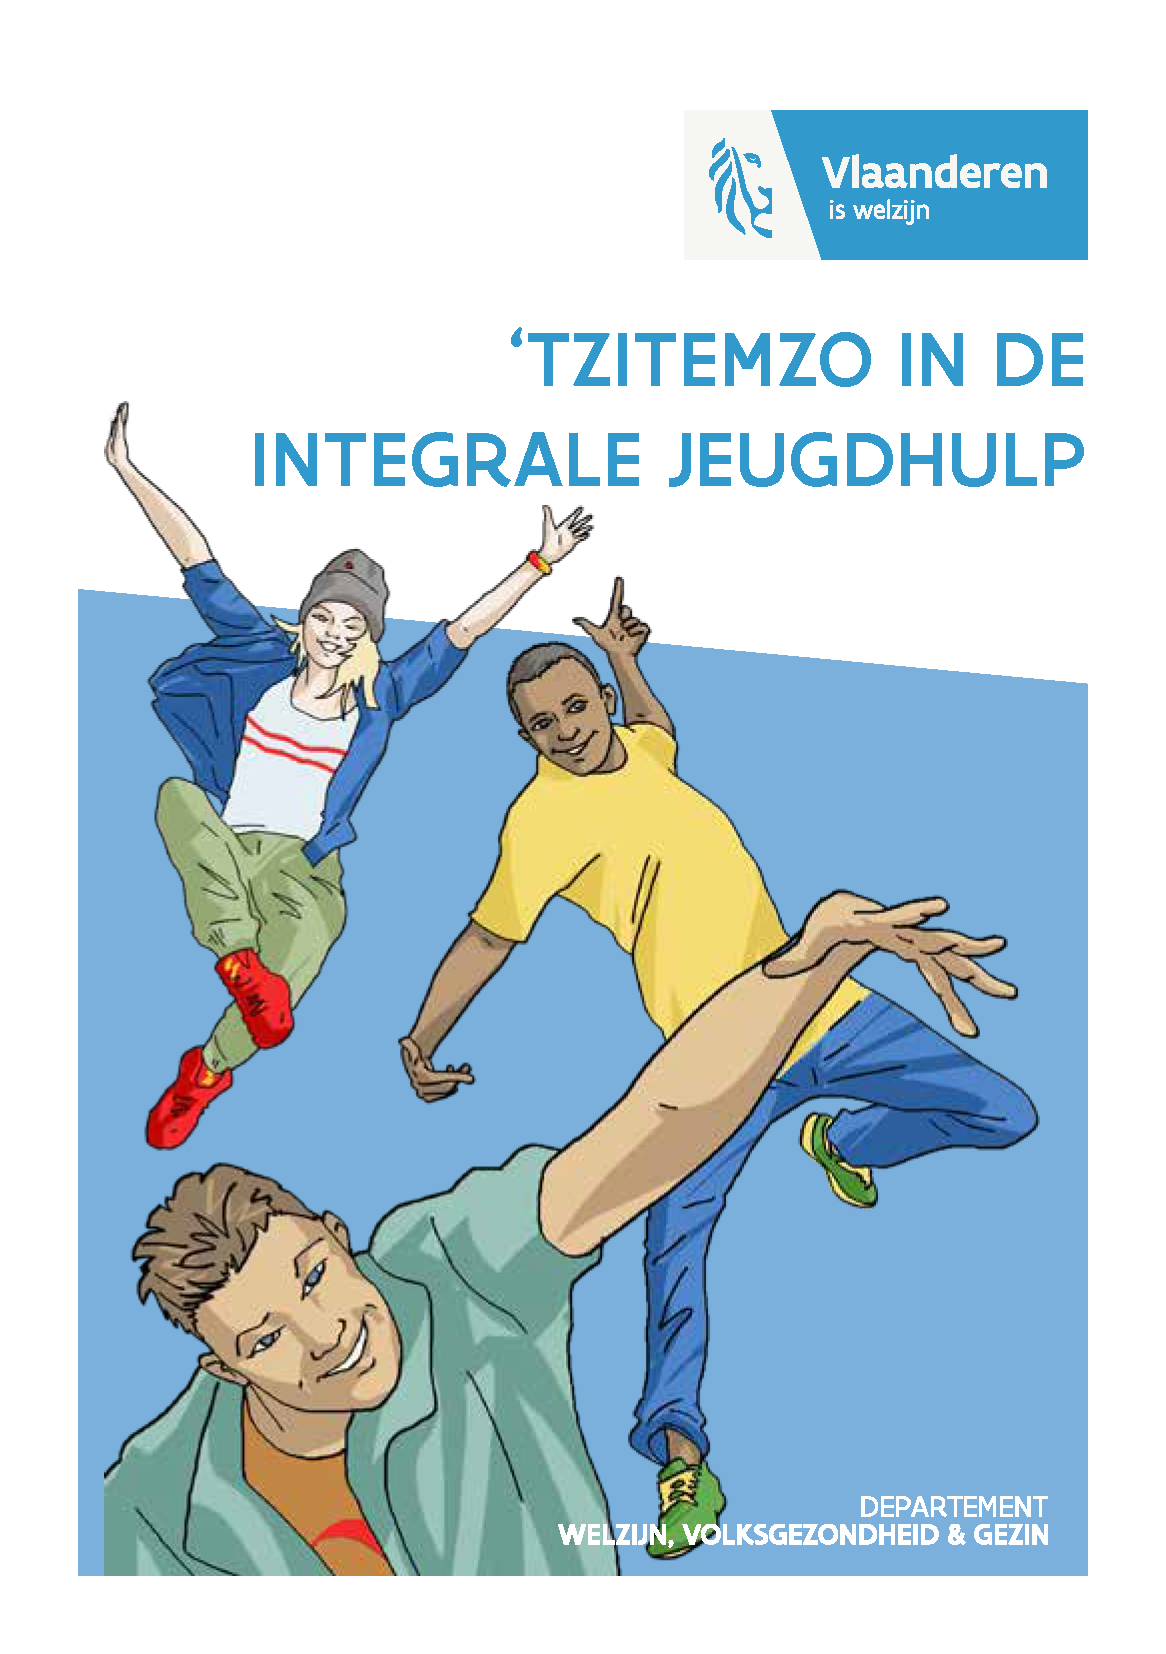 Zomer '22: Online nascholing 't Zitemzo... met de rechten van minderjarige cliënten voor jeugdhulpverleners